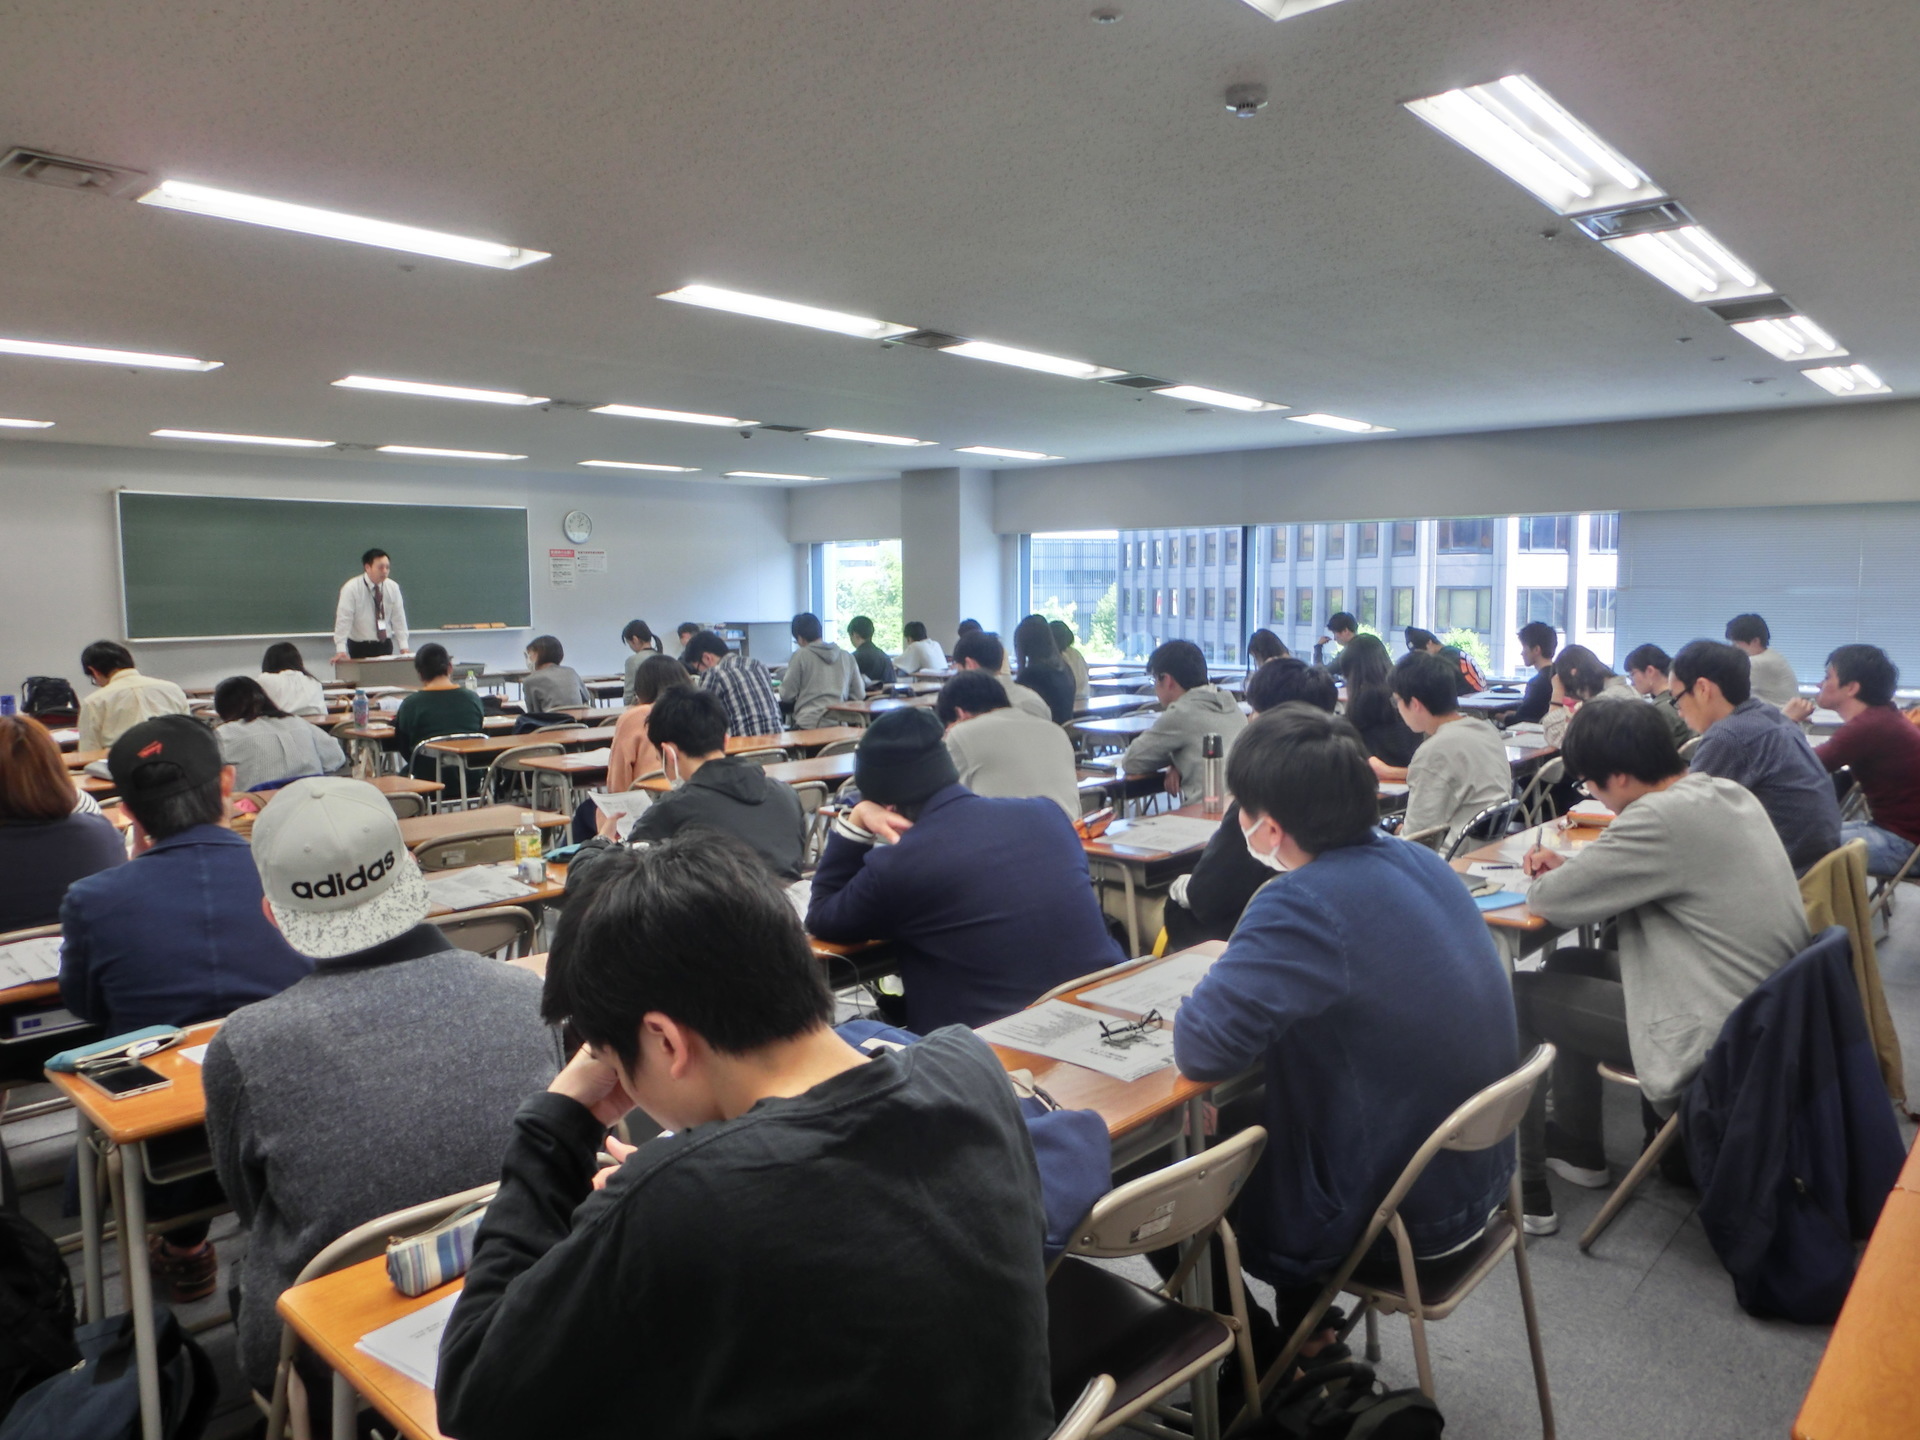 大卒程度公務員試験対策 地方公務員受験セミナーを開催しました 東京アカデミー熊本校 教員採用試験 看護師国家試験 公務員試験 のブログ